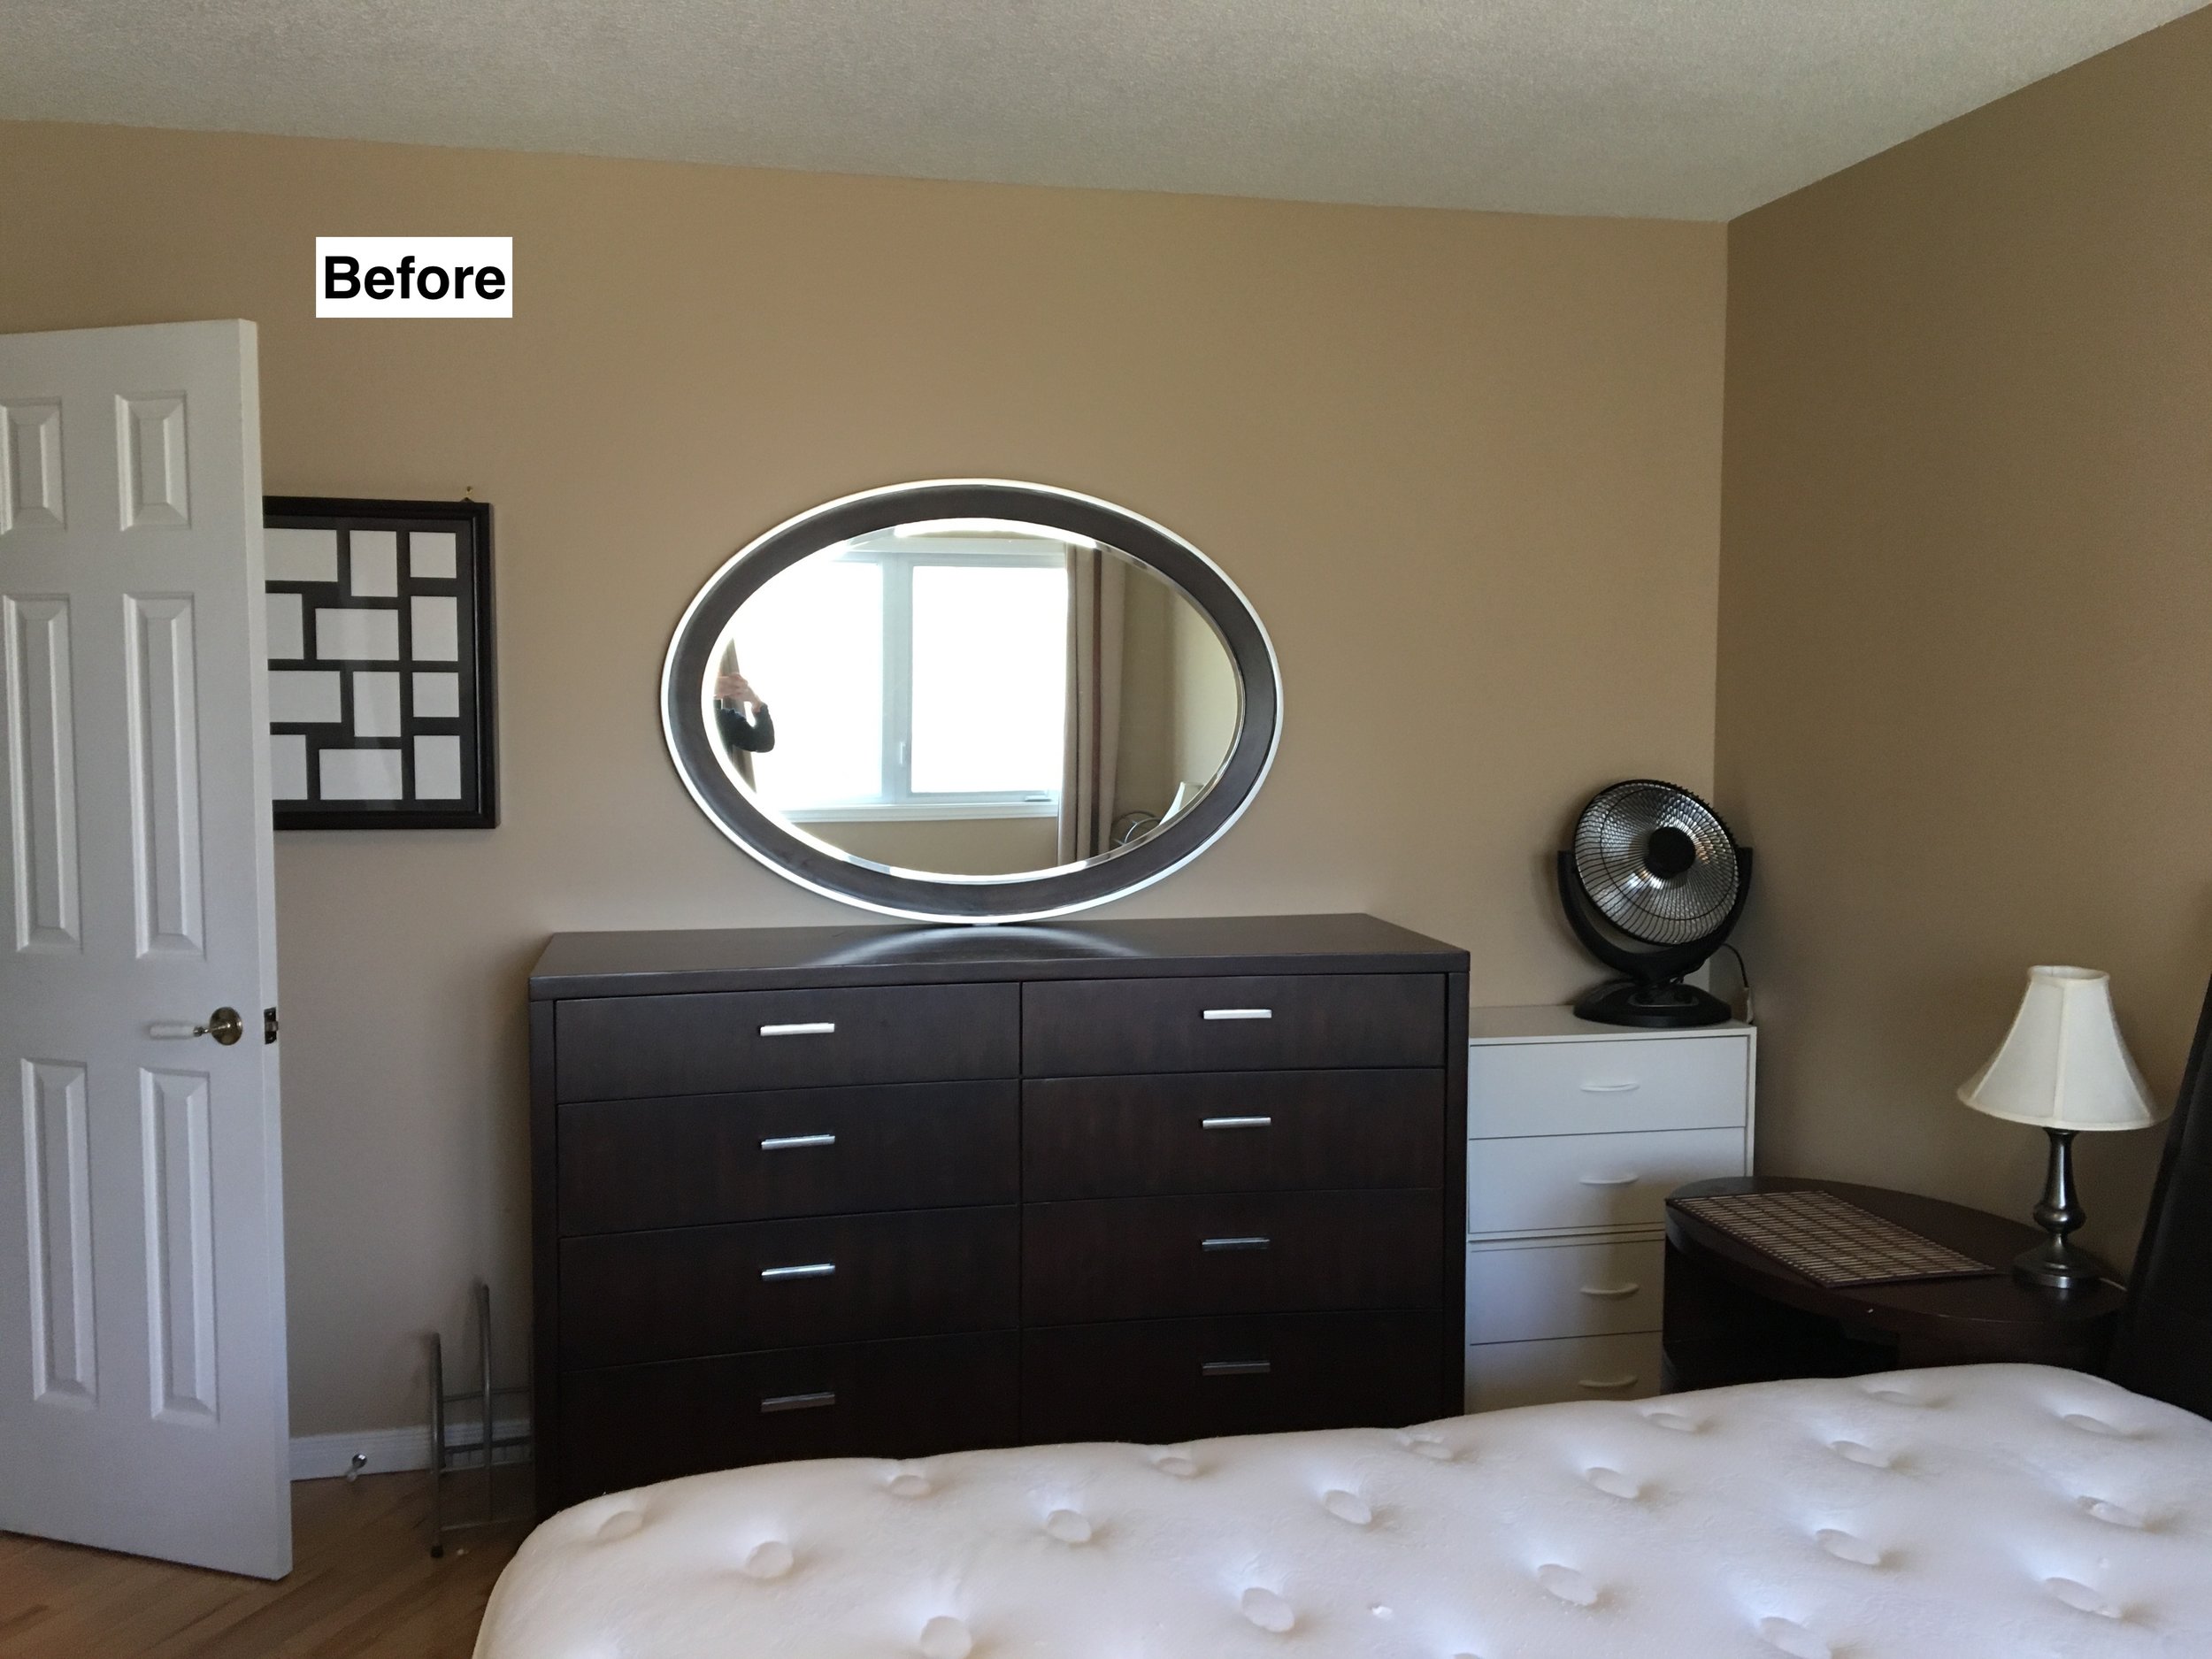 BJ Master bedroom - before.jpg